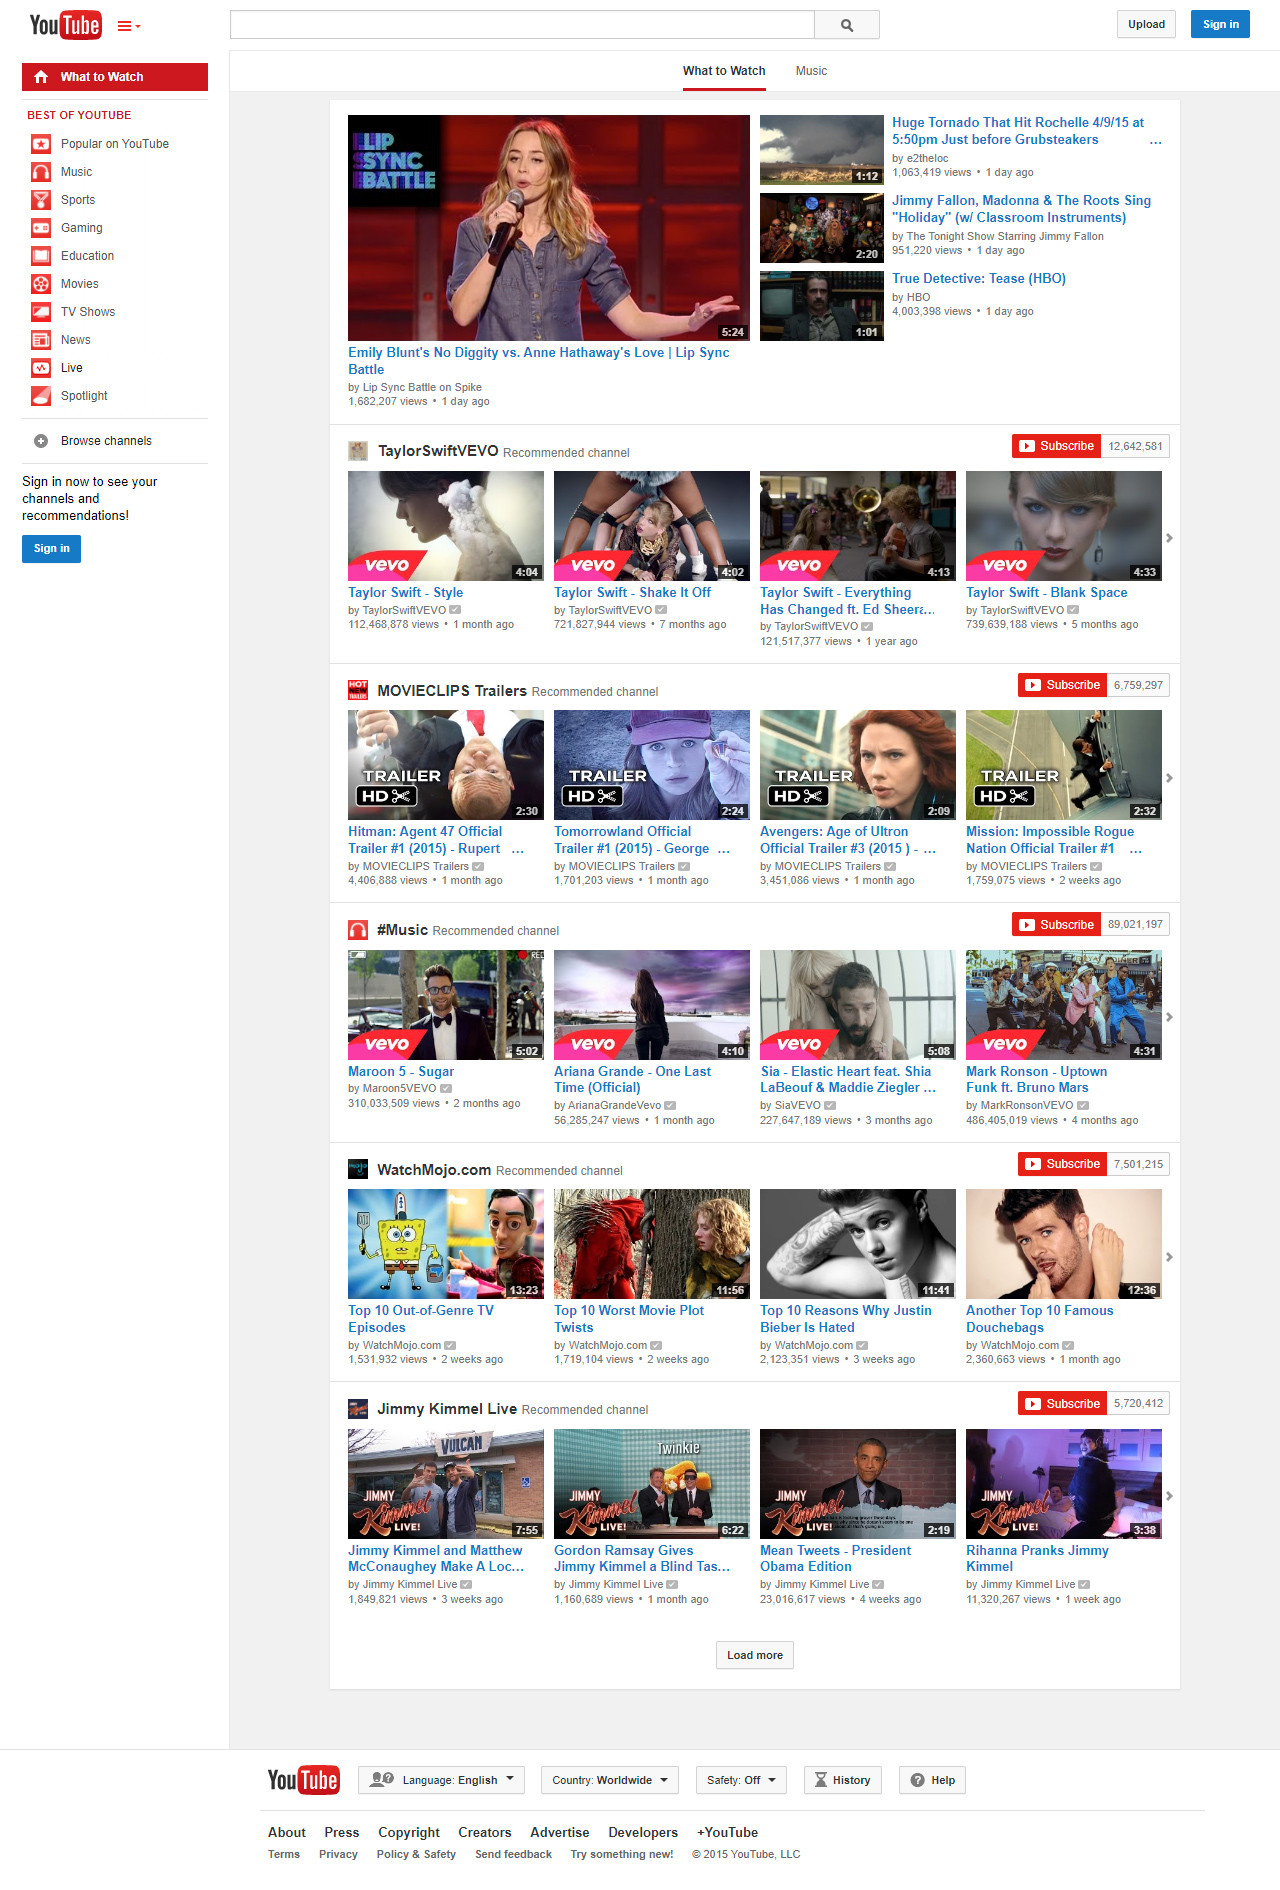 YouTube in 2015